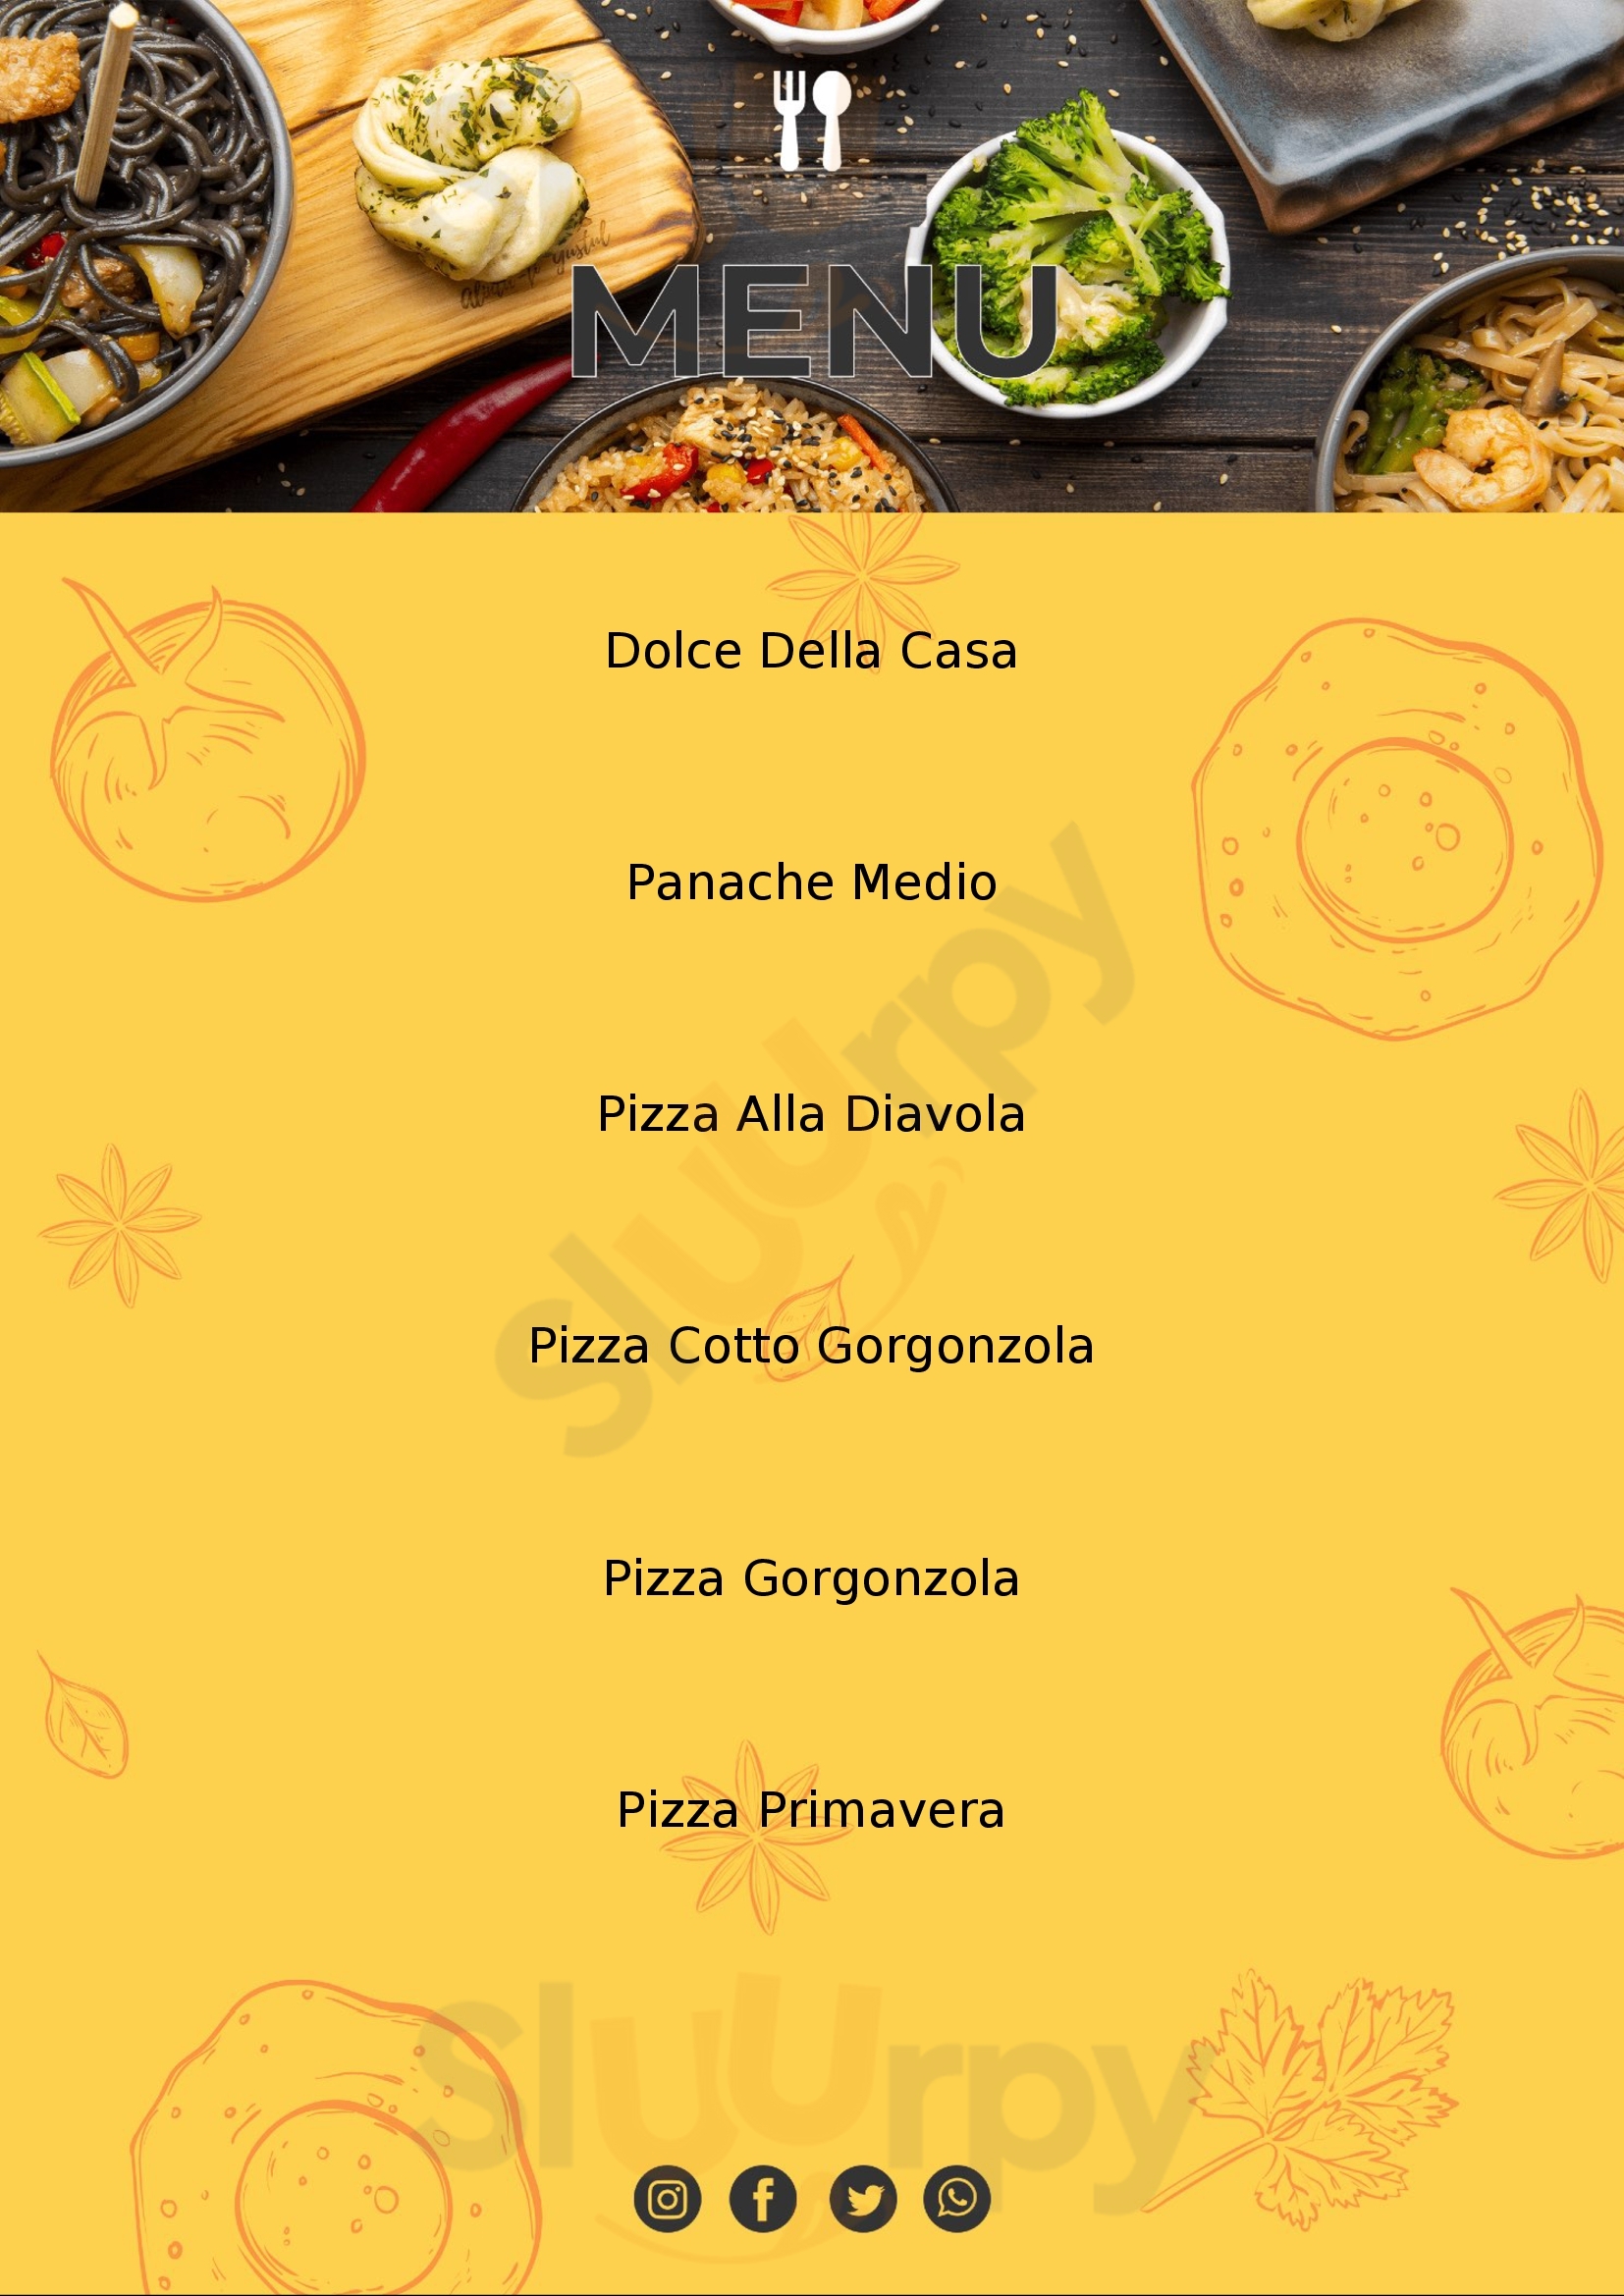 Pizzeria Leon D'oro San Michele Mondovi menù 1 pagina